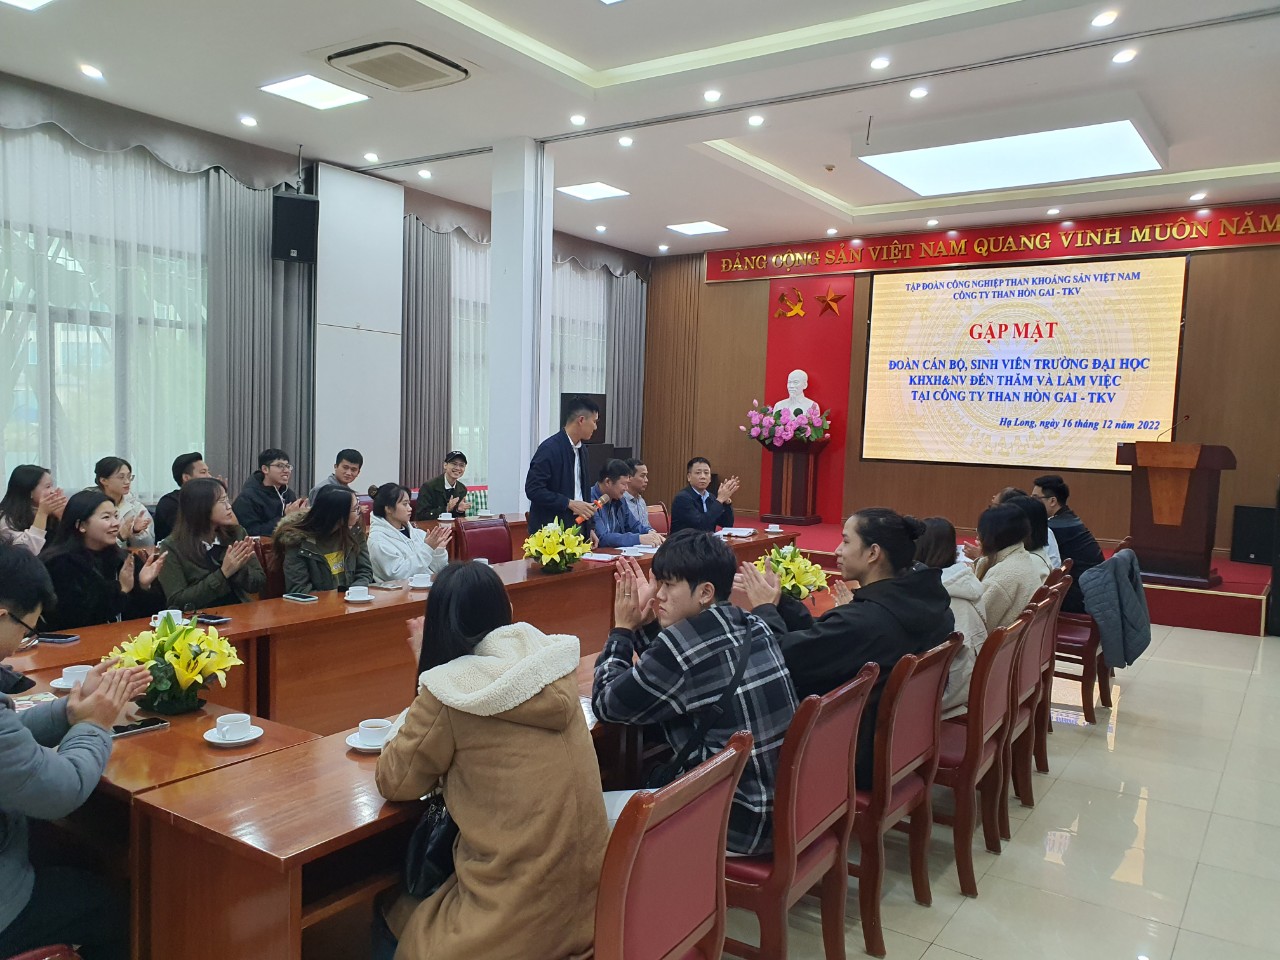 Thực tế môn học các chuyên ban Triết học Mác-Lênin, LSTH và tôn giáo Phương đông, Mỹ học - Đạo đức học năm 2022 tại Quảng Ninh